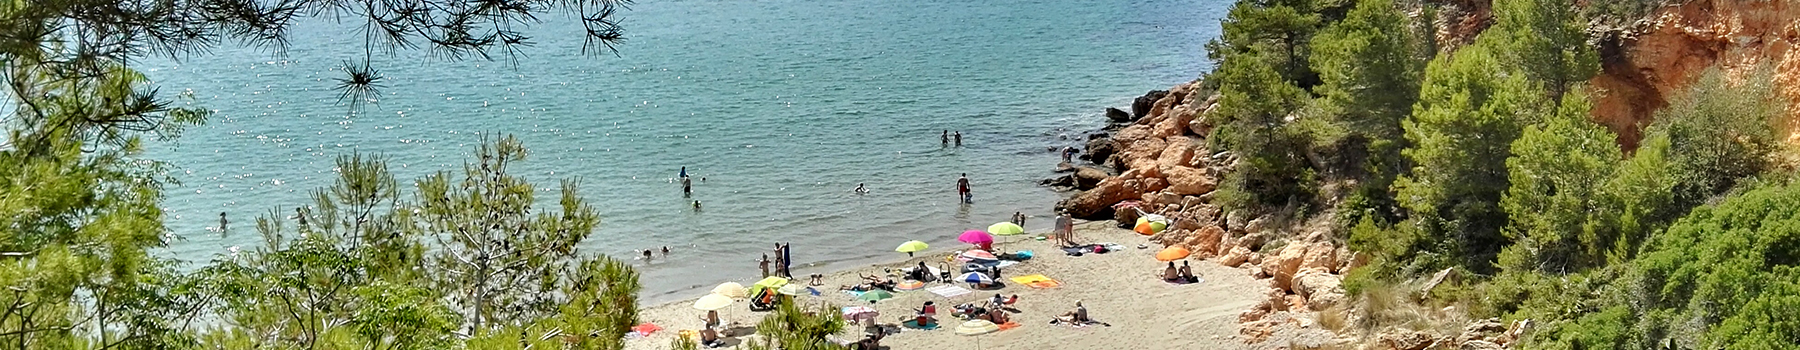 Пляжи Л’Ампольи — рай в синих тонах с ароматом моря